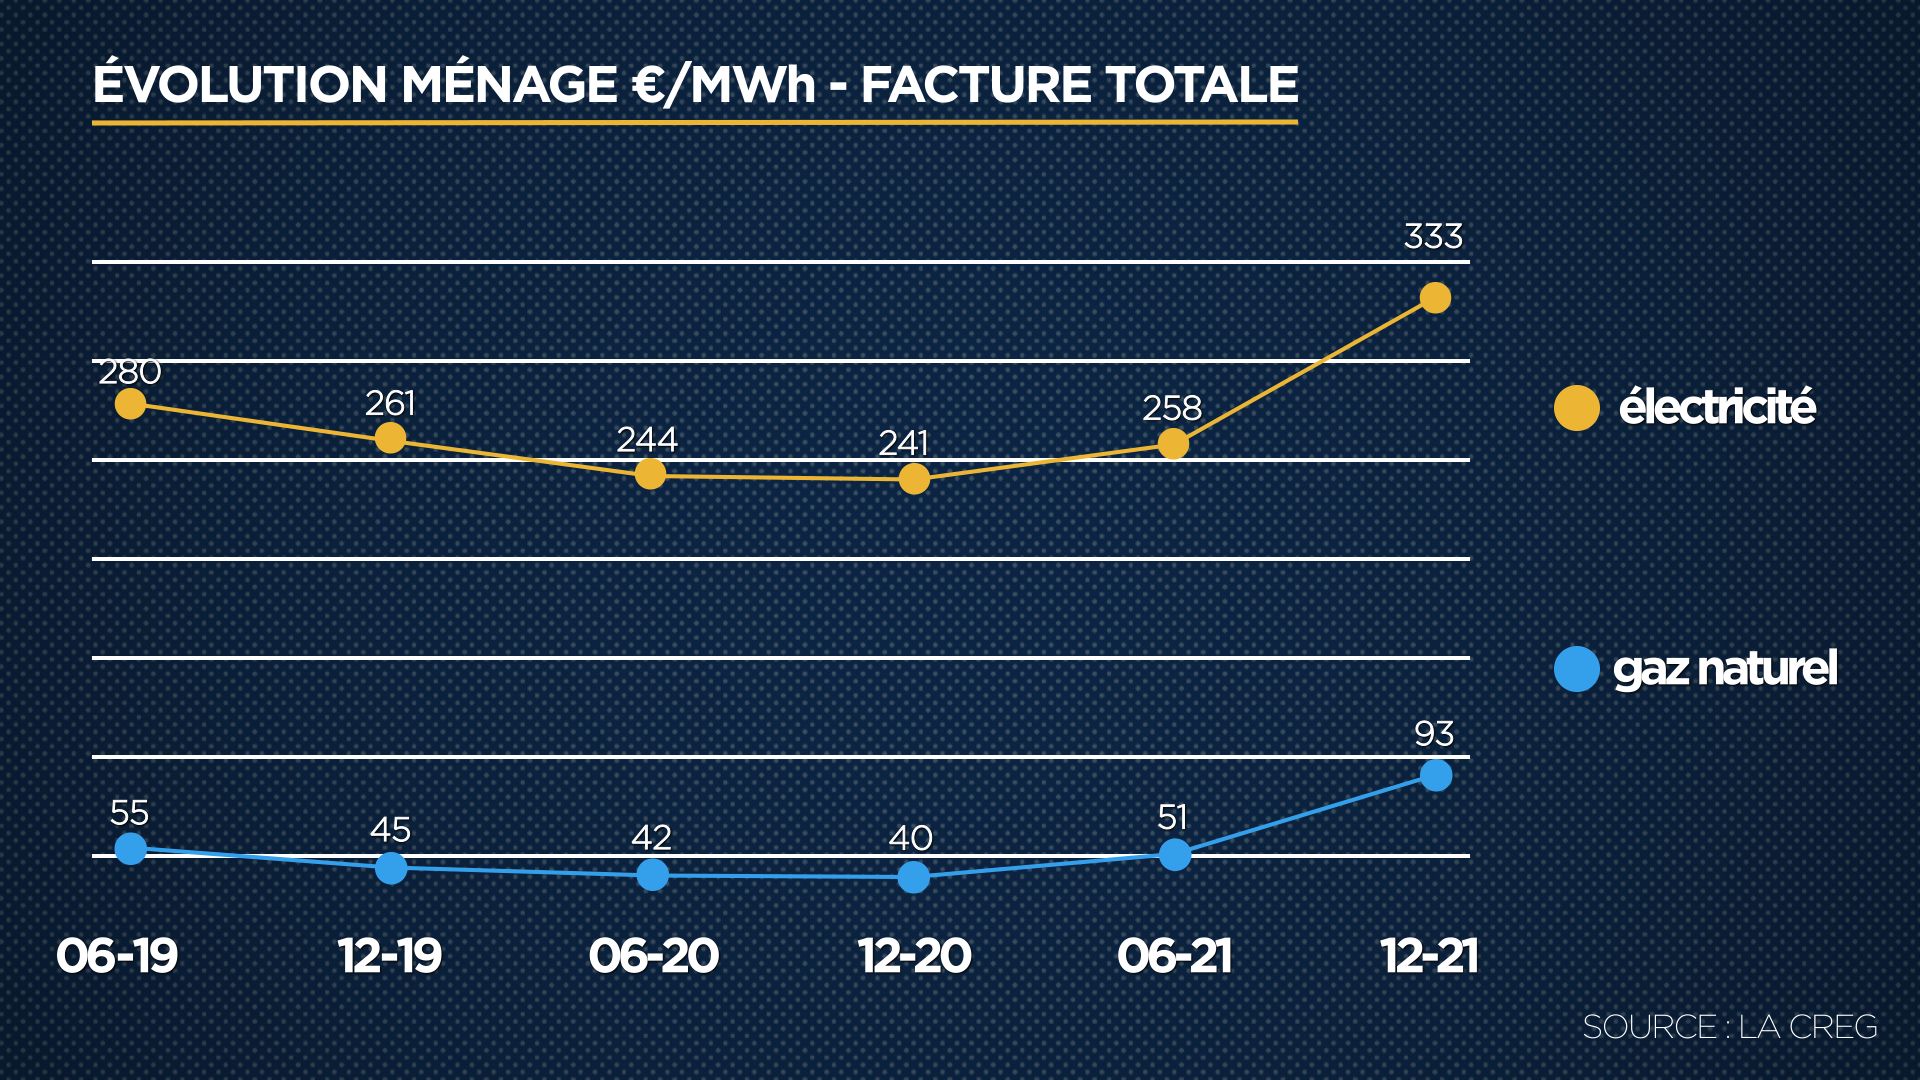 Ce graphique montre l’évolution, au cours des 6 derniers semestres, du prix de l’électricité (E) et du gaz naturel (G) en € par MWh au niveau de la facture totale d’un ménage et d’une PME pour la Belgique.

Source : CREG